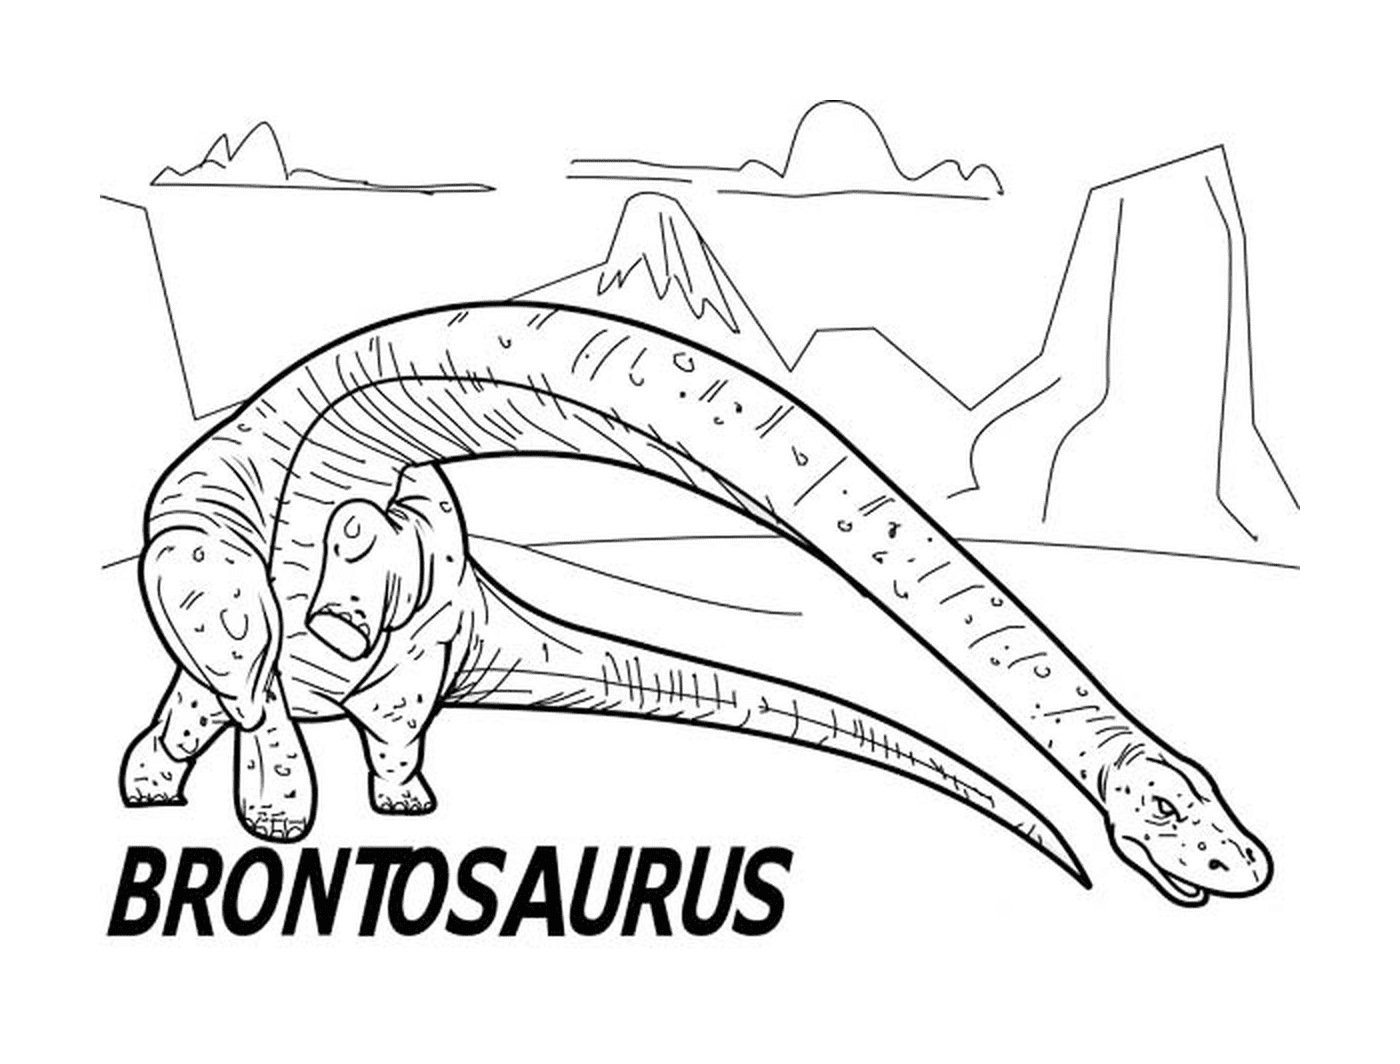  Brontosaurus de Jurásico, encuentro con dinosaurios 